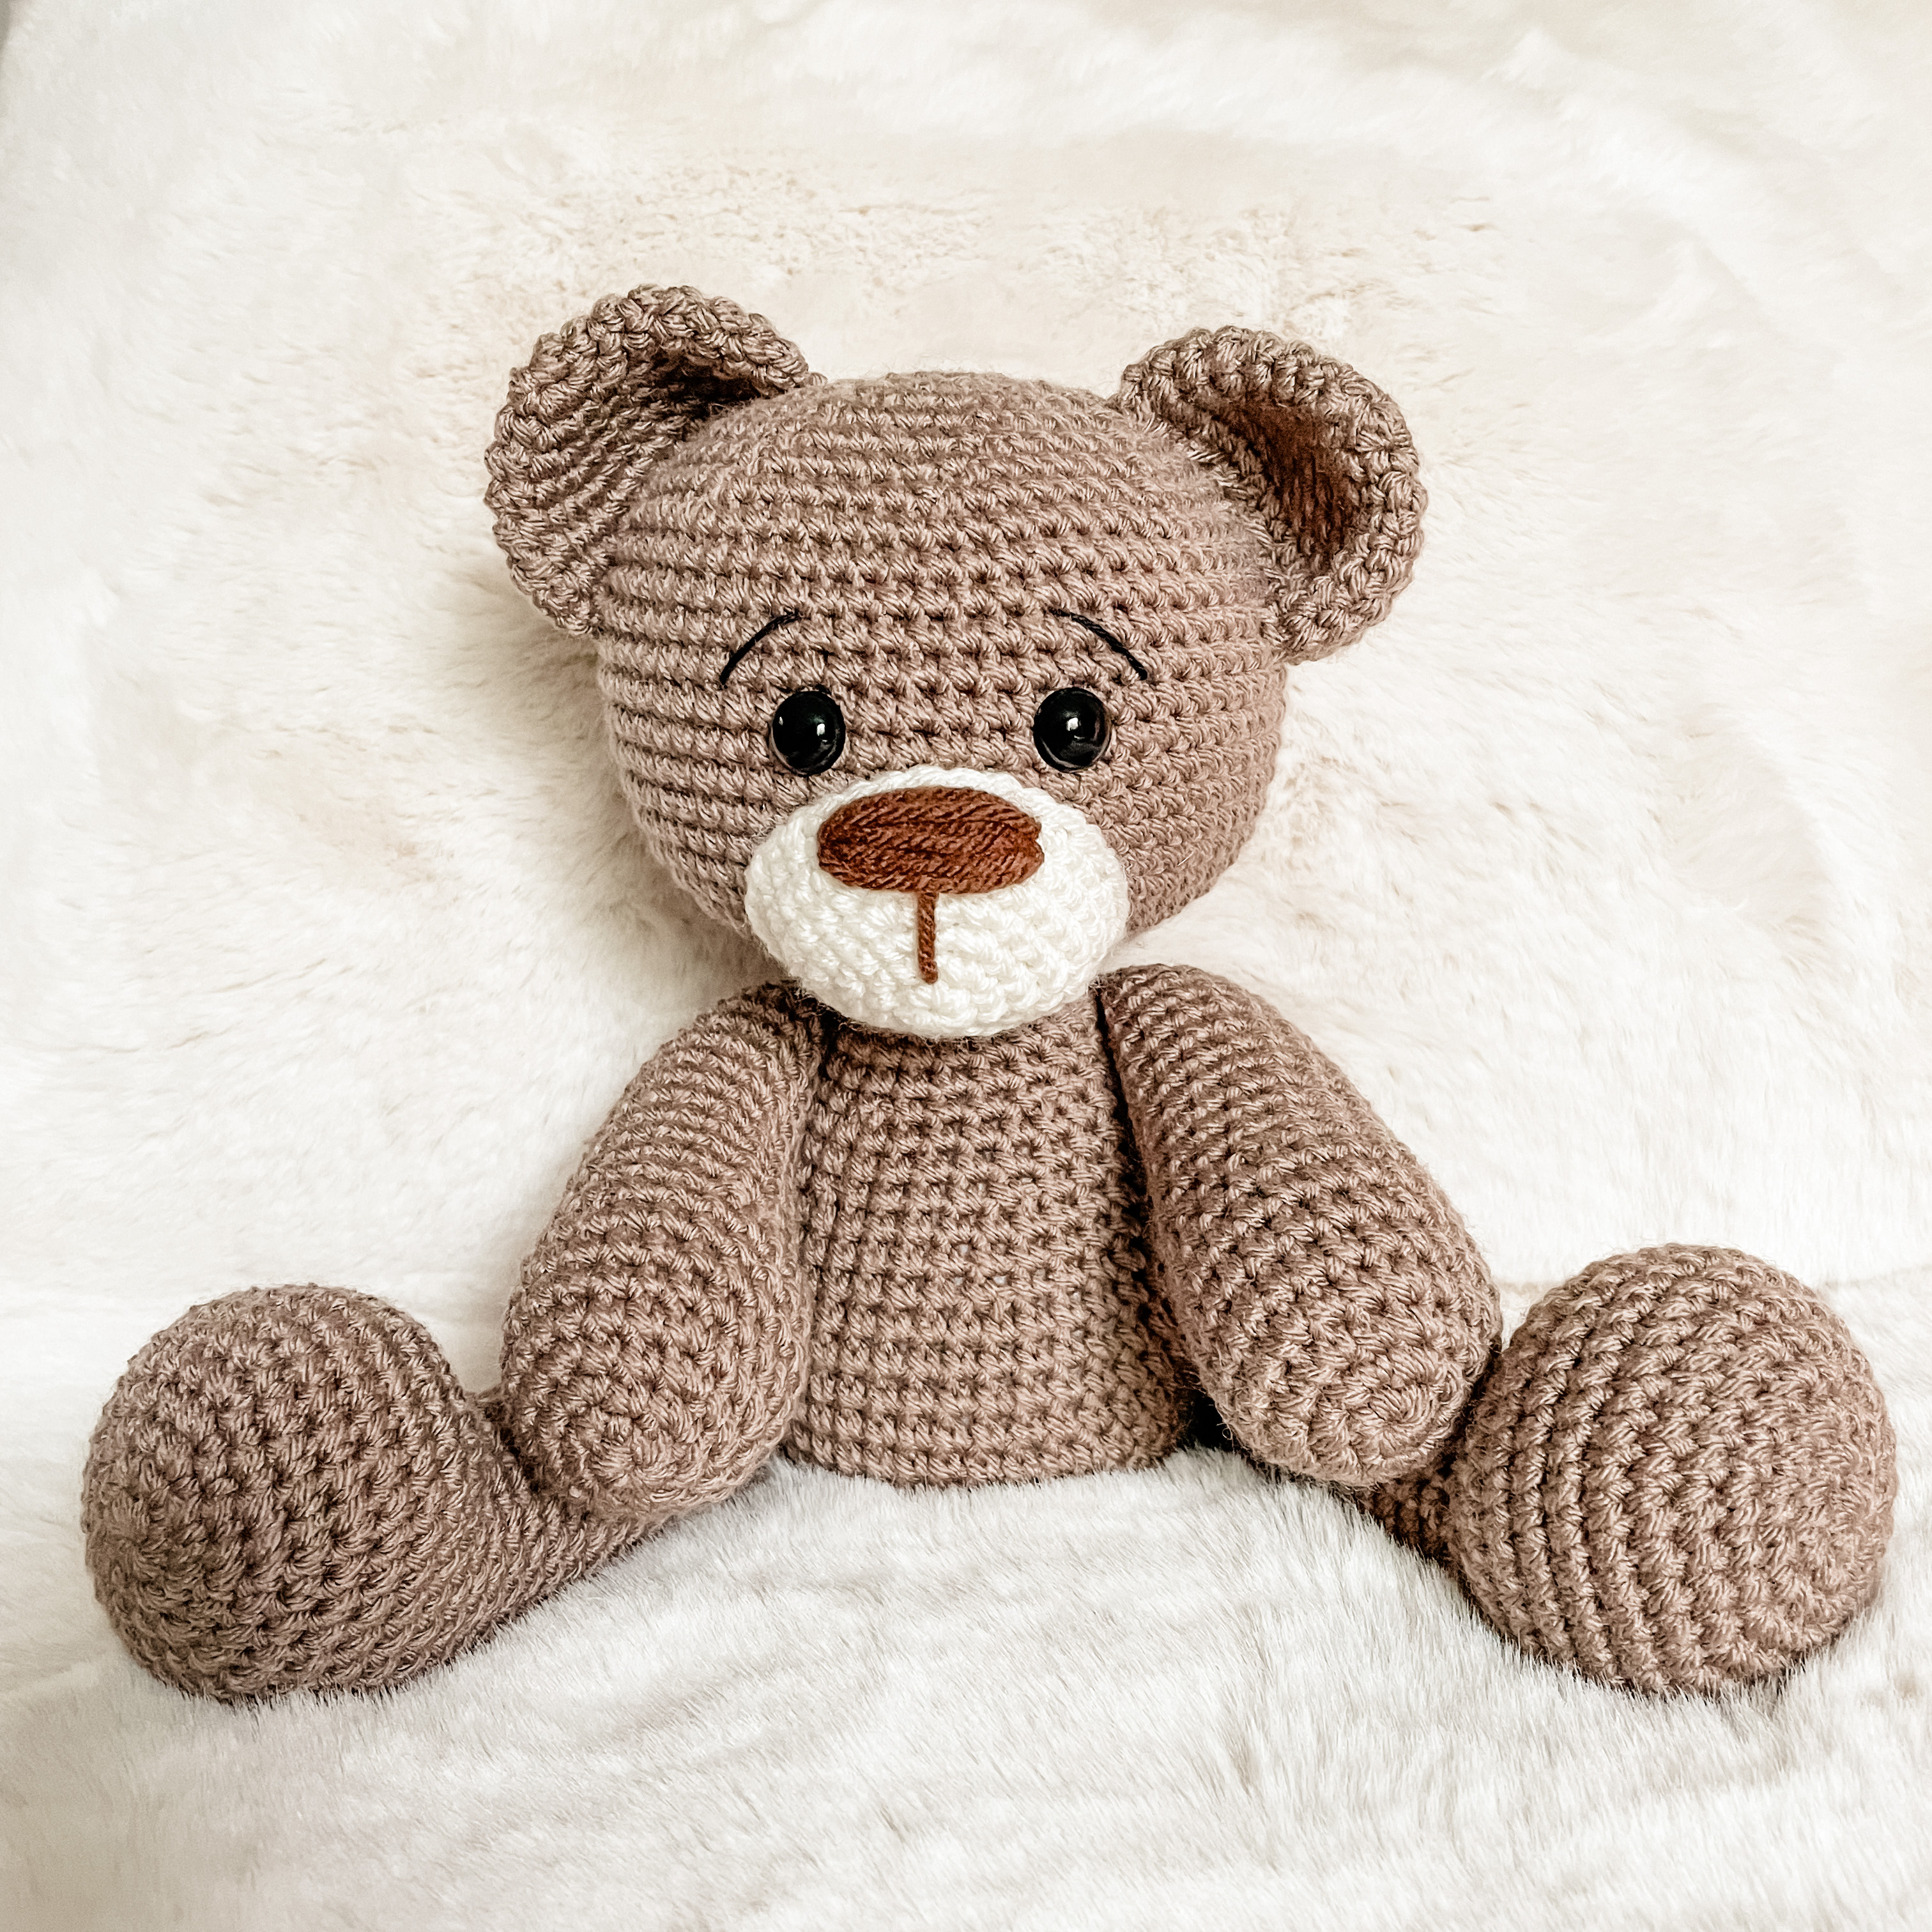 CROCHET PATTERN***Amigurumi Crochet Teddy Bear Pattern